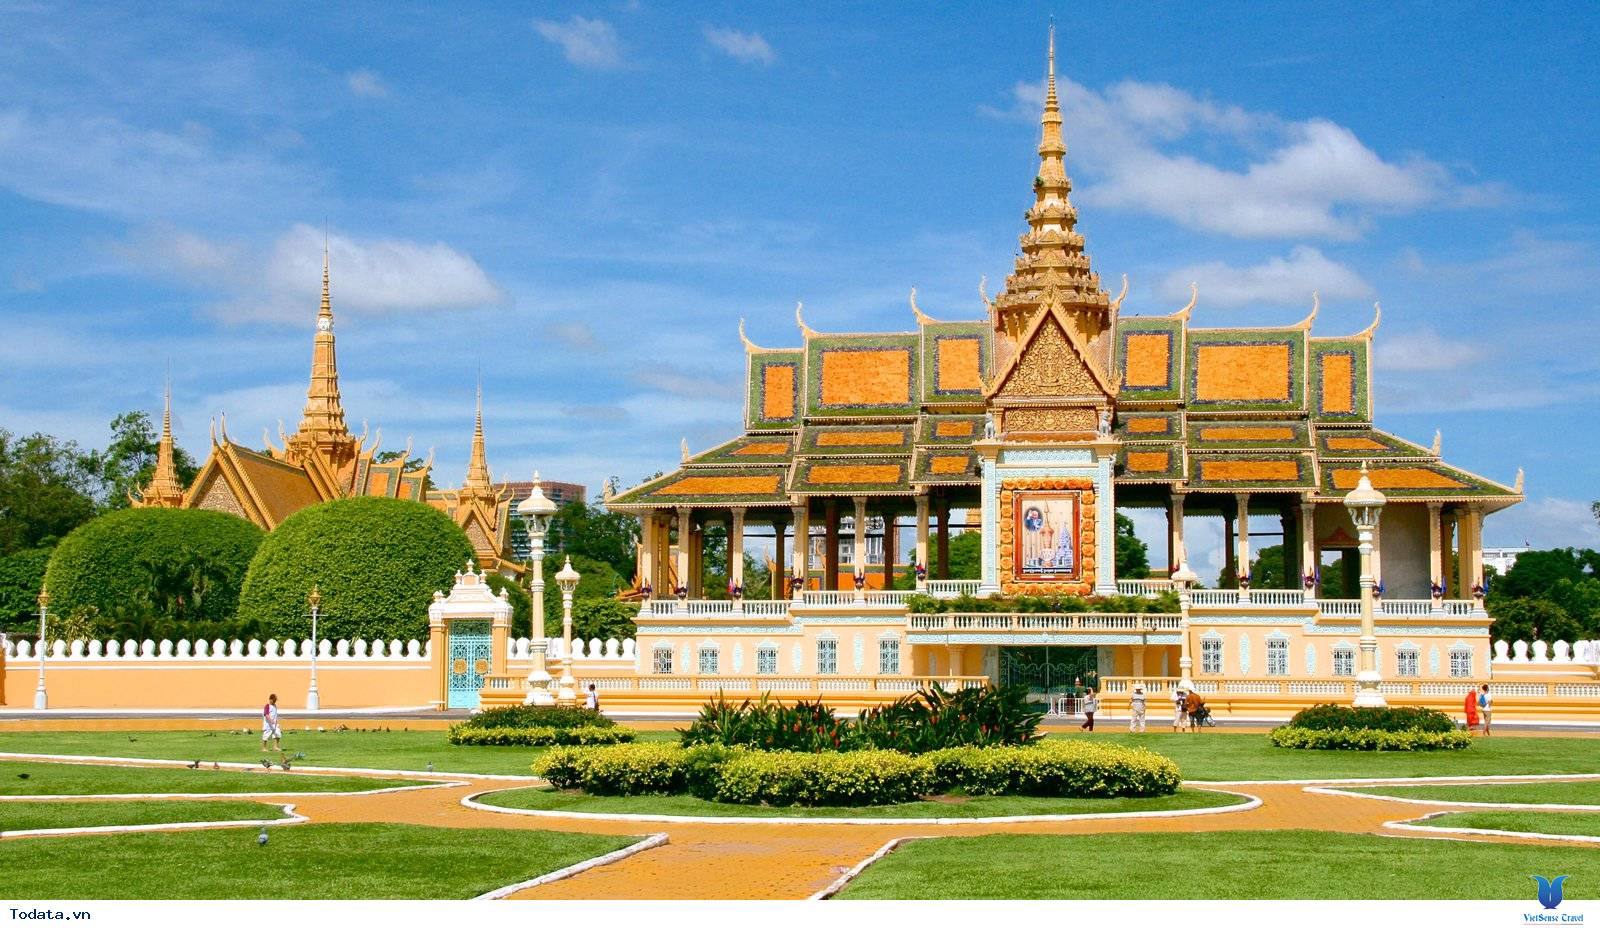 Tour Campuchia từ Hồ Chí Minh 2 ngày khởi hành thứ 7 hàng tuần